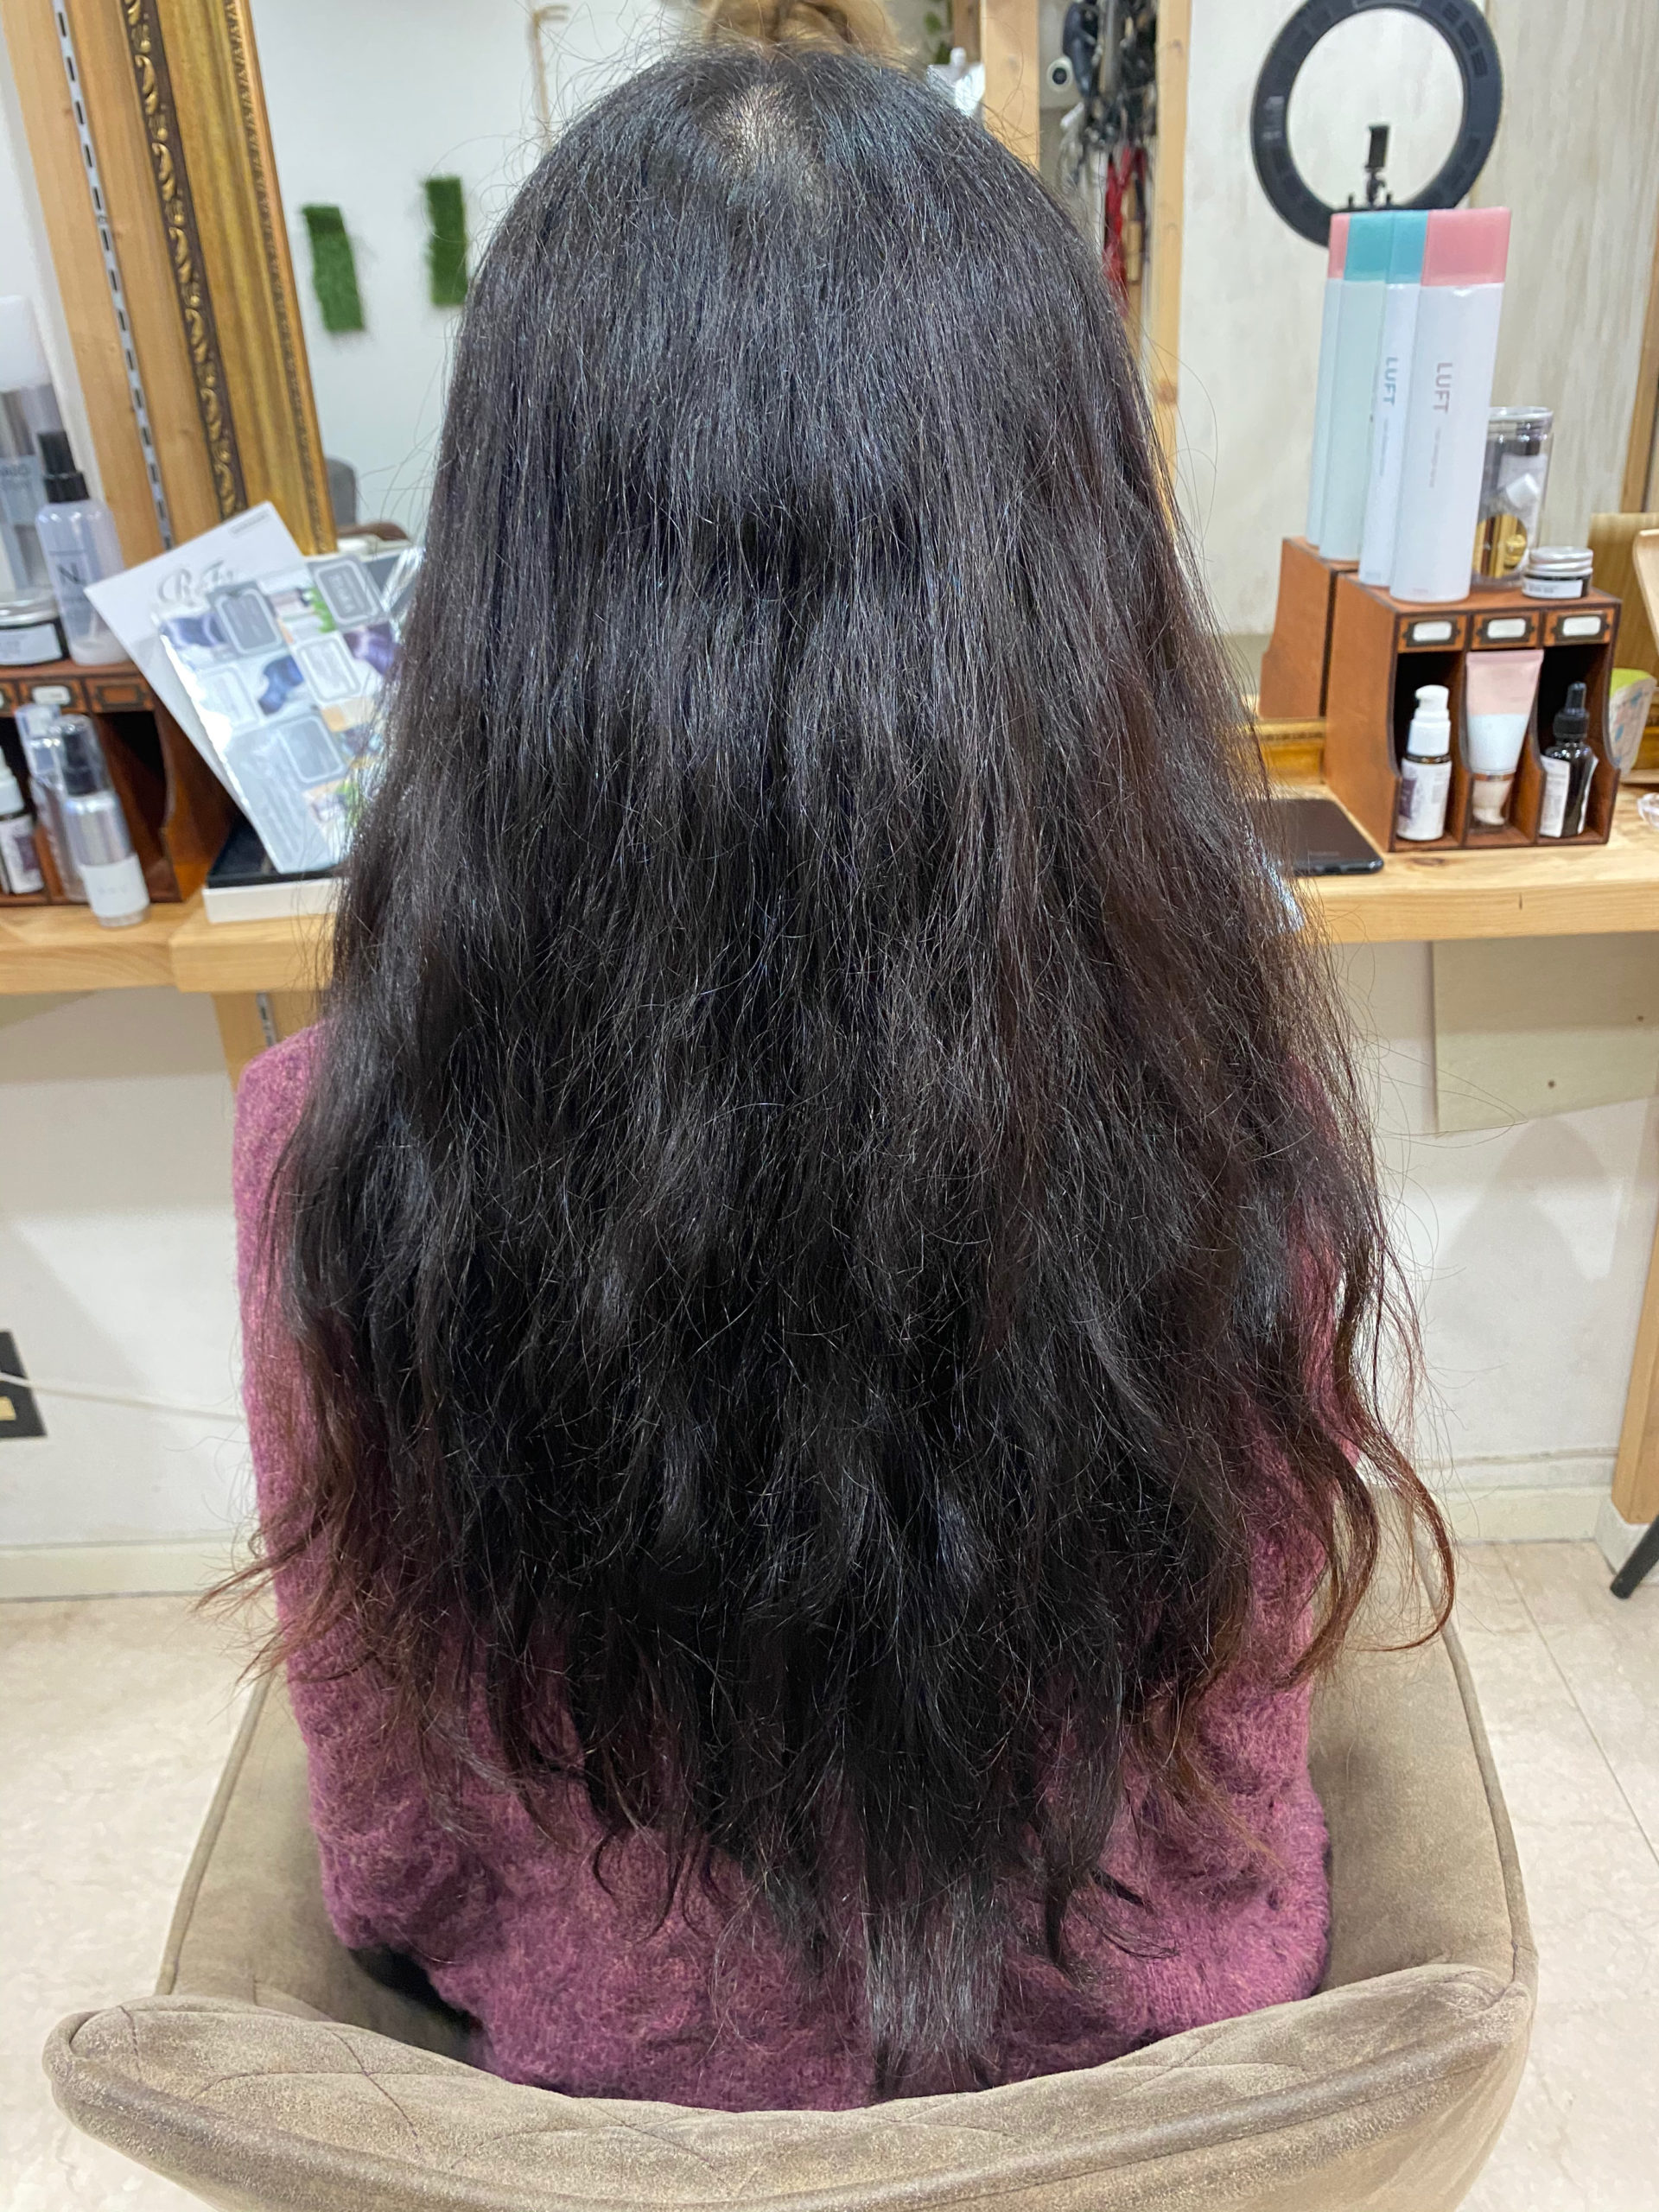 デジタルパーマがかかっている髪を縮毛矯正で艶髪ストレートヘアに。原宿・表参道『髪のお悩みを解決するヘアケア美容師の挑戦』